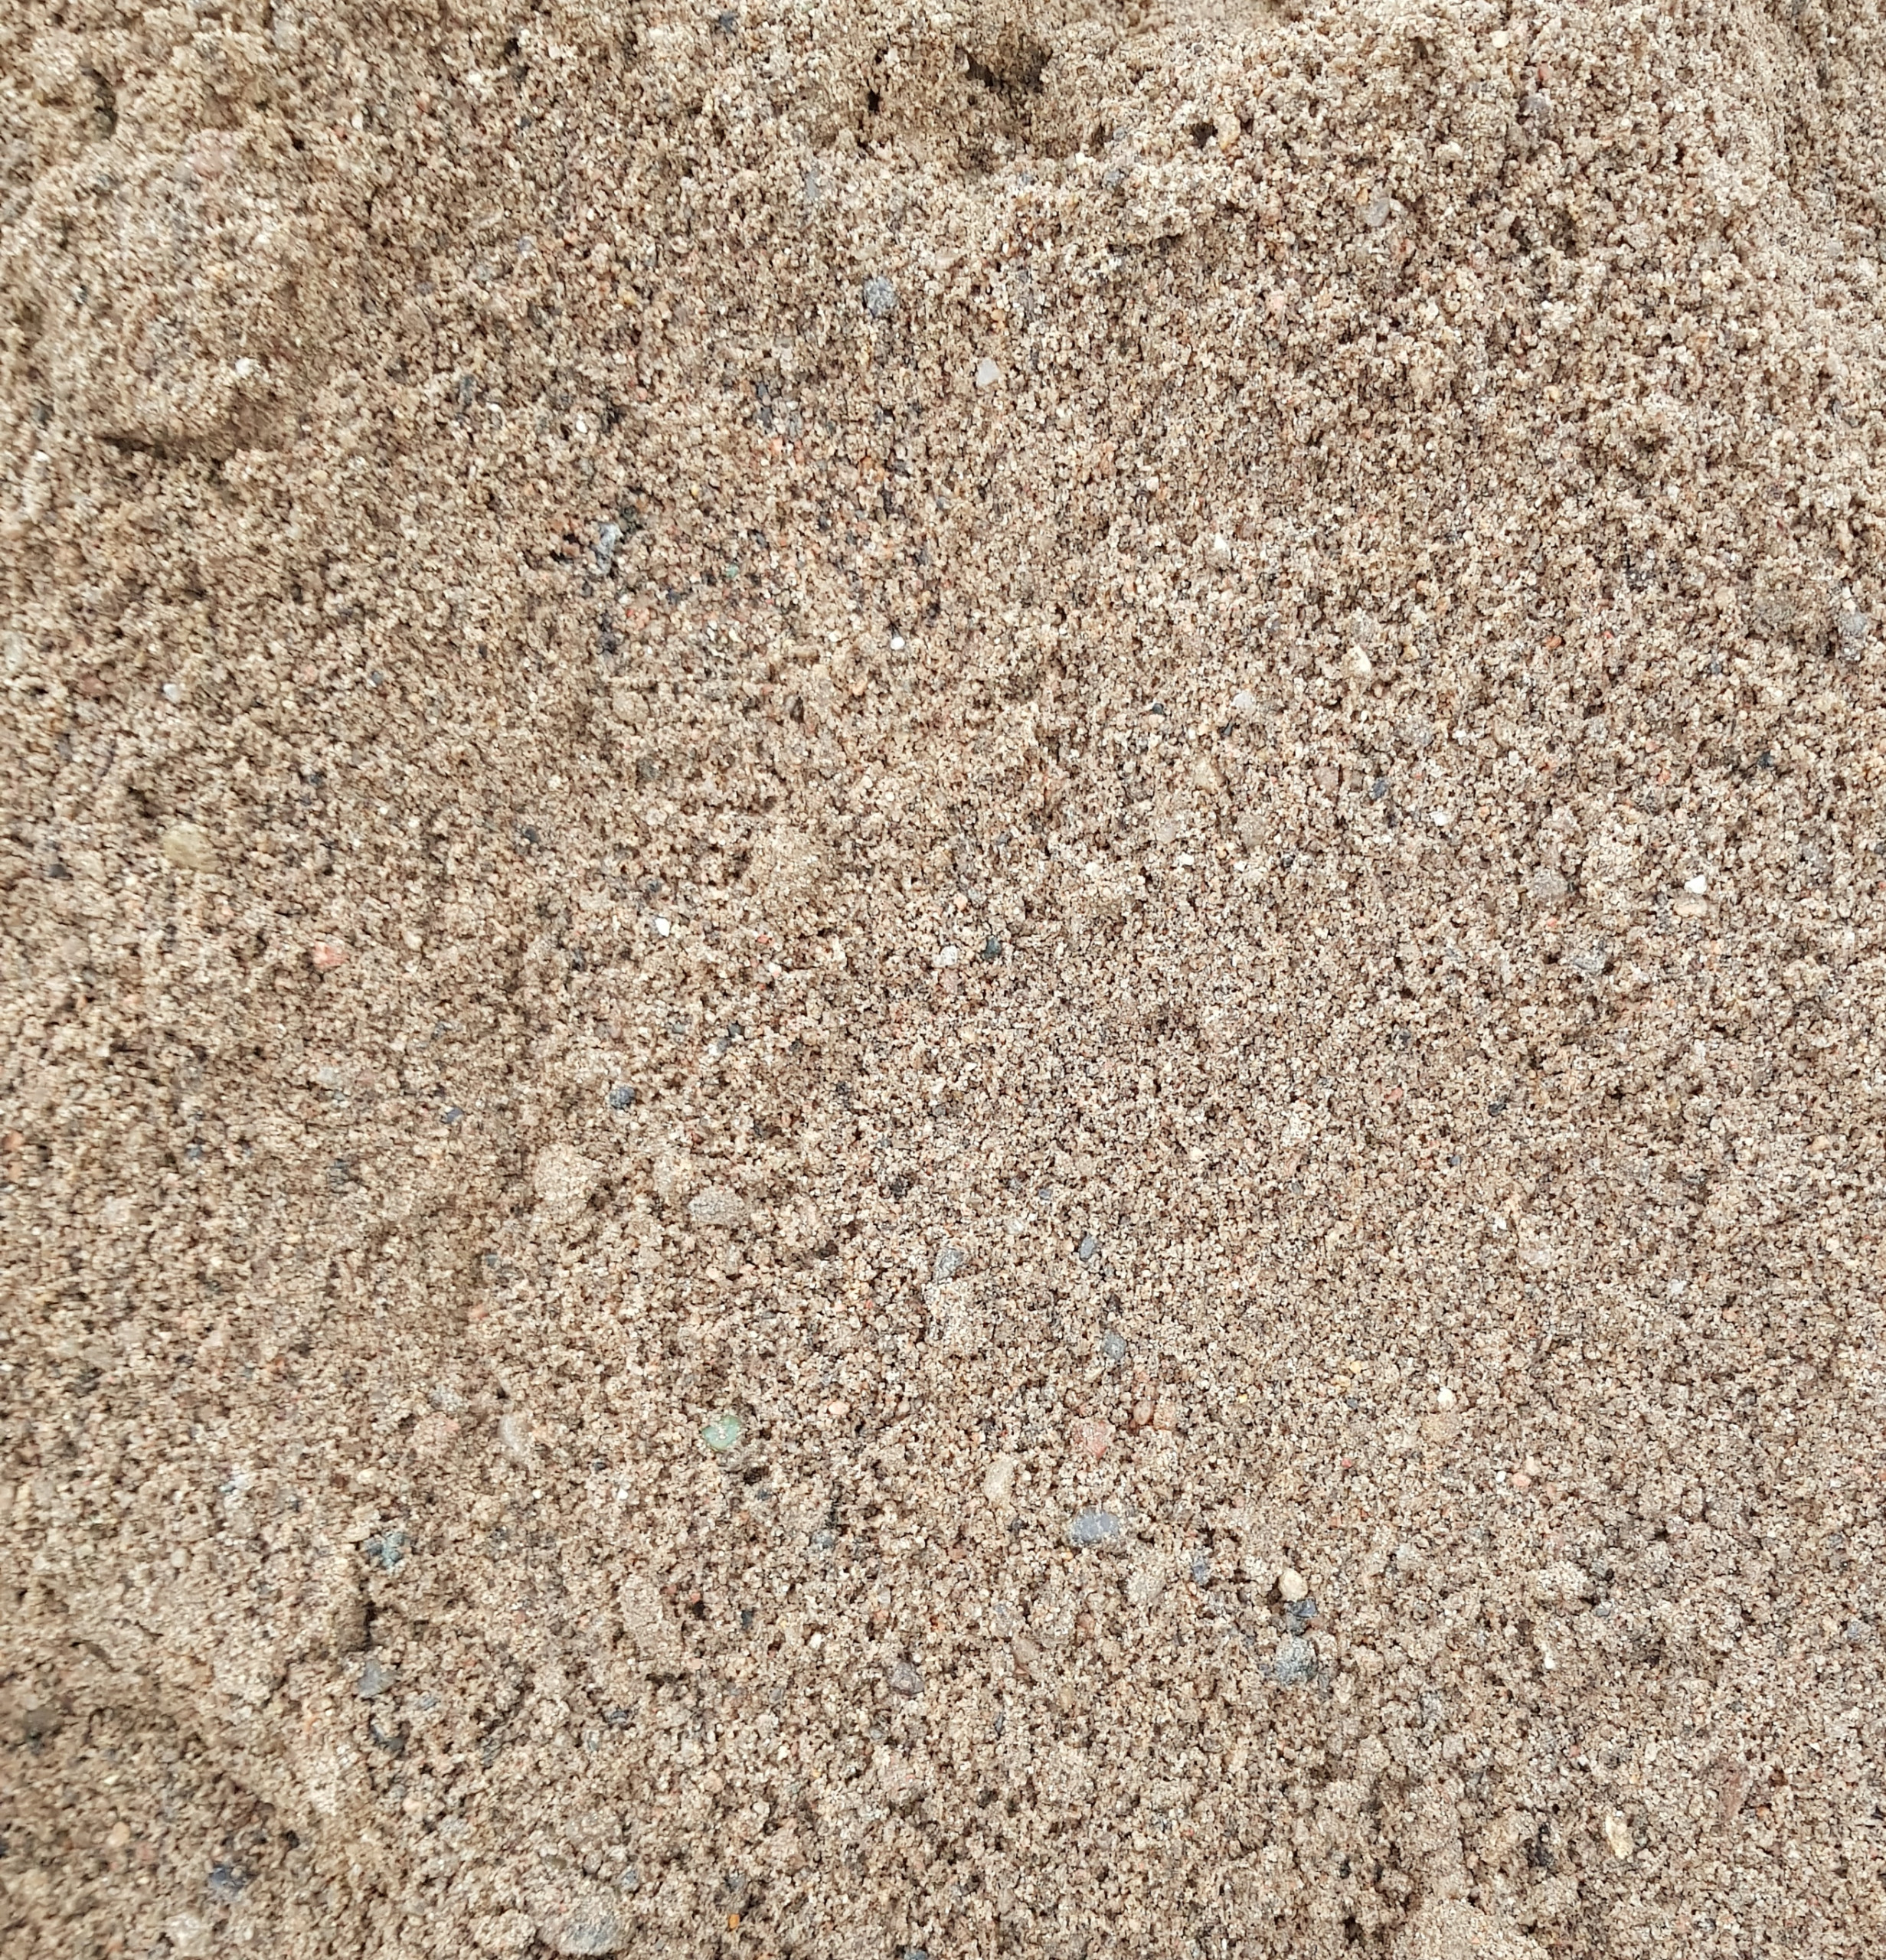 Sand gesiebt